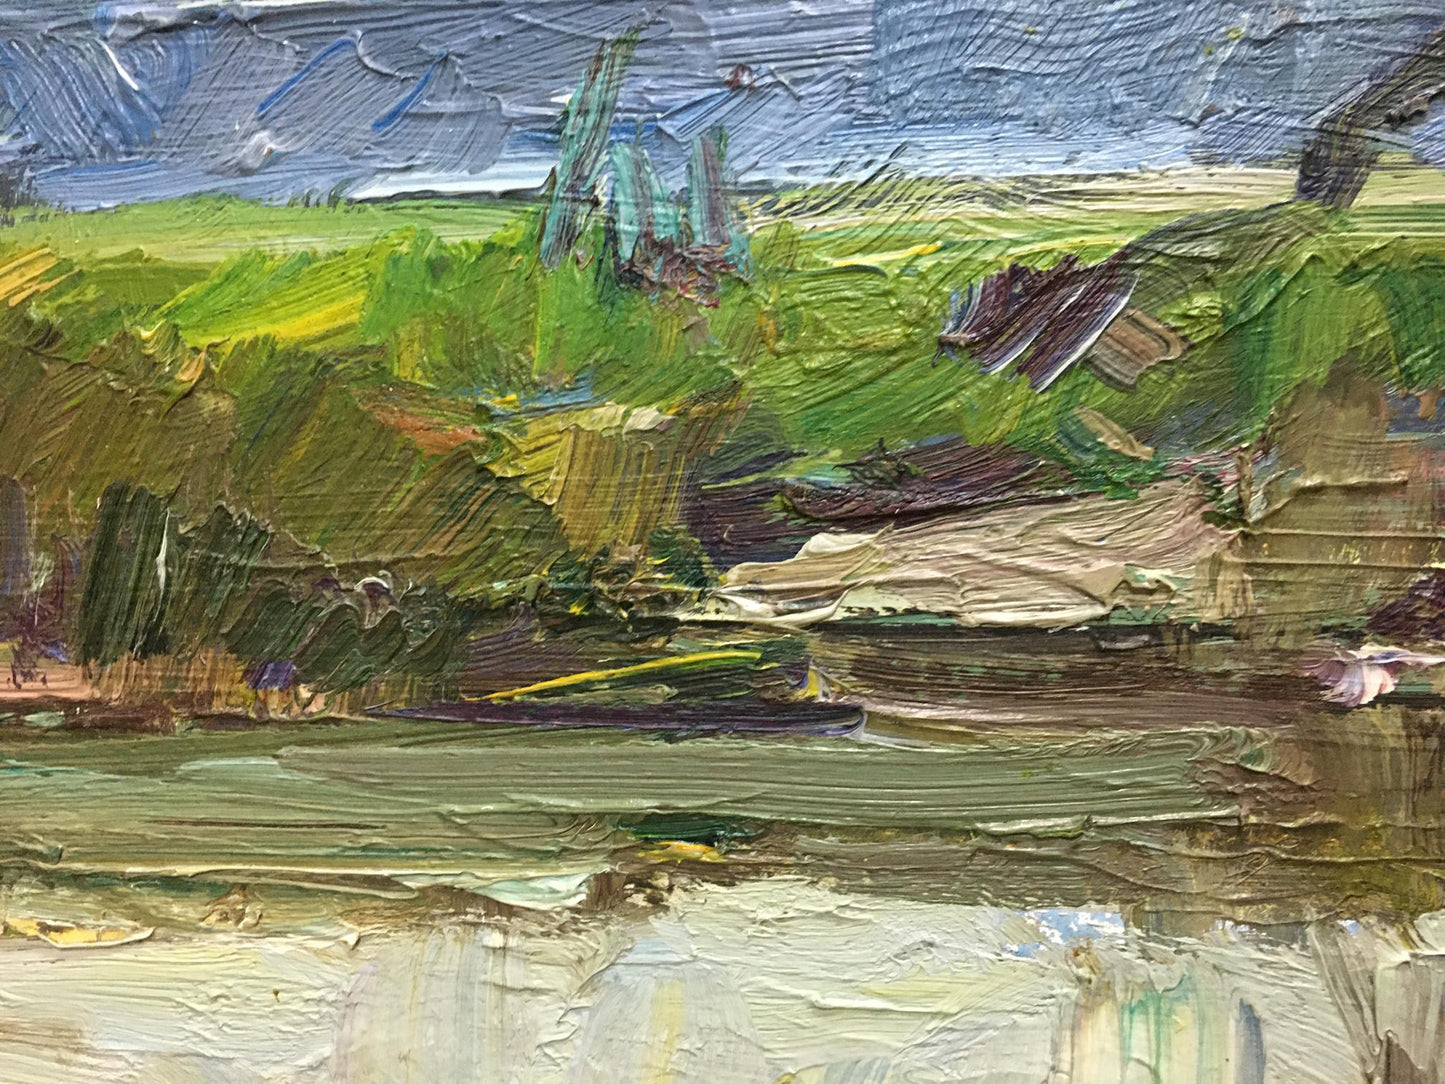 Oil painting River landscape Zakharov Fedor Zakharovich